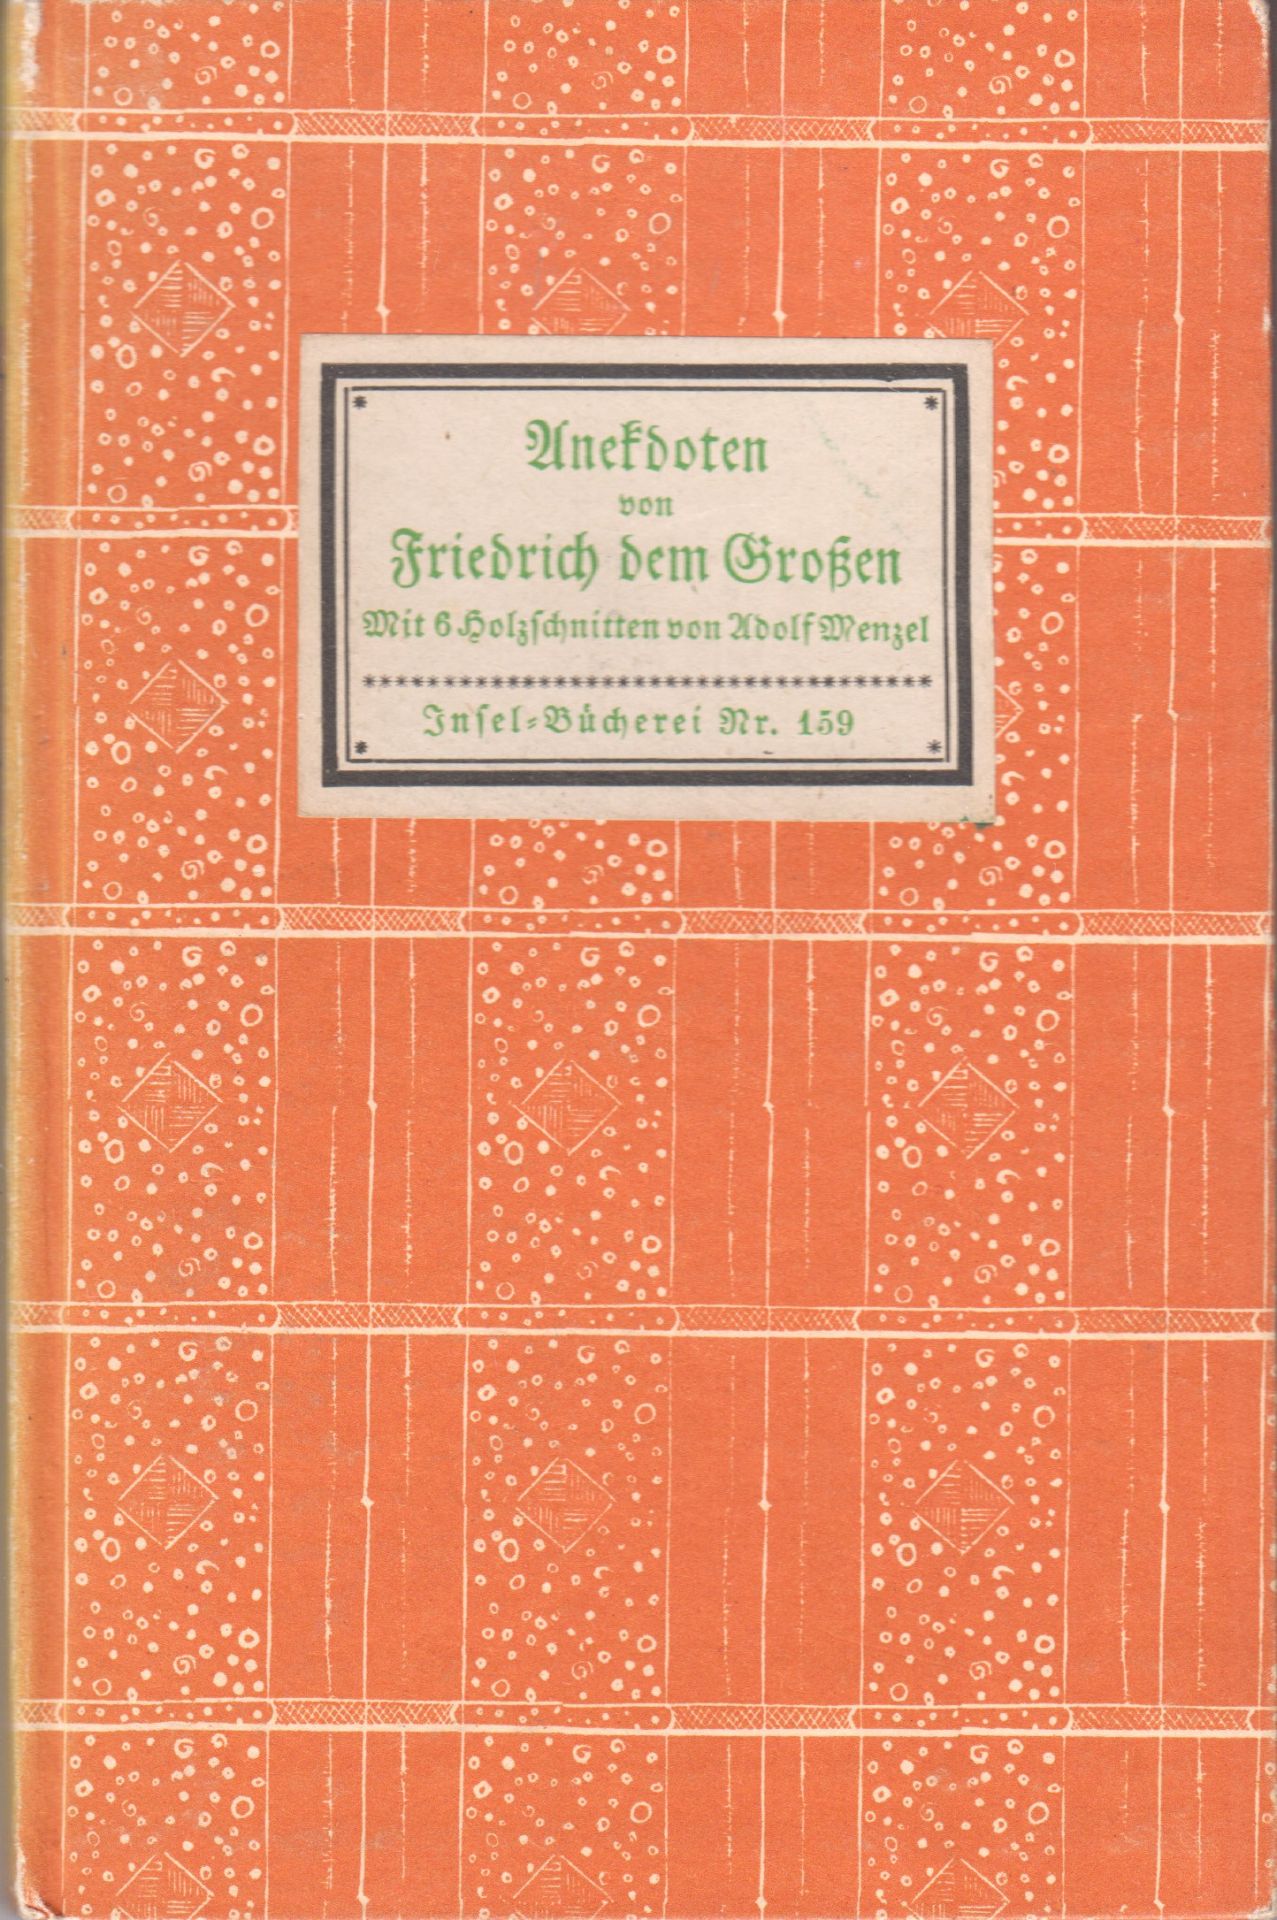  Anekdoten von Friedrich dem Groen. Mit zwlf Holzschnitten v. Adolph Menzel. Eingeleitet v. Reinhold Schneider.